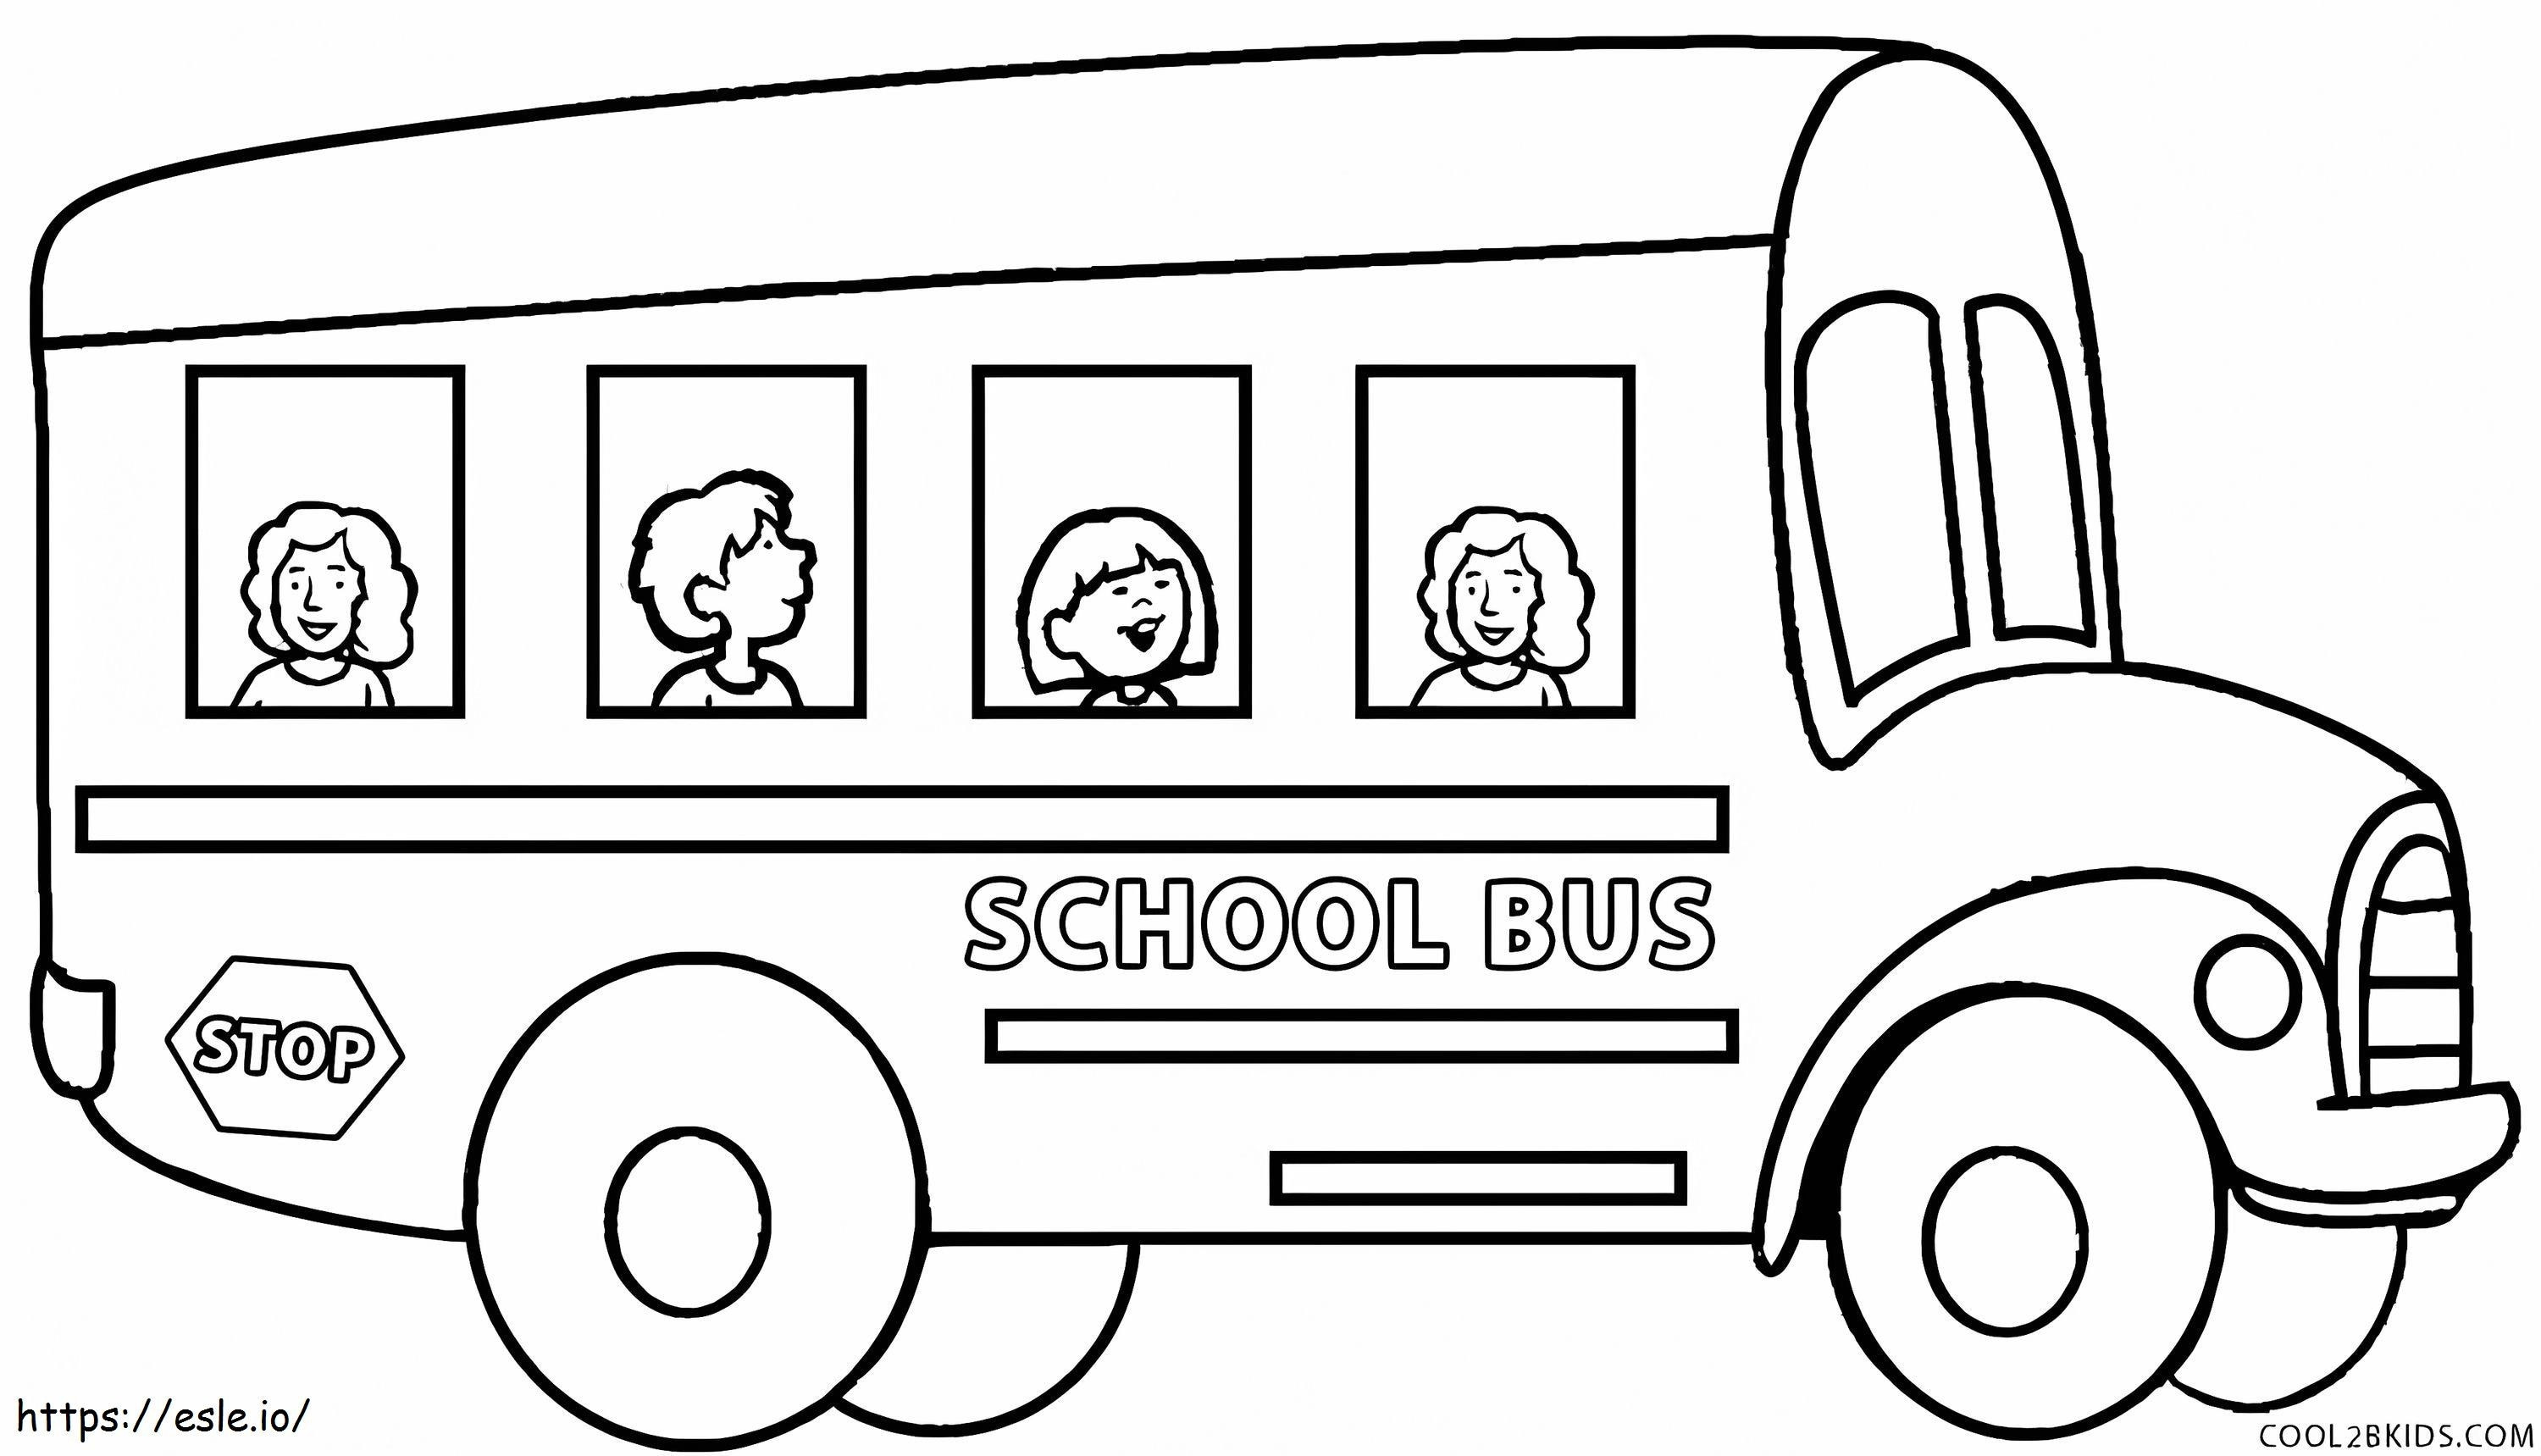 Dört Çocuk Okul Otobüsünde boyama